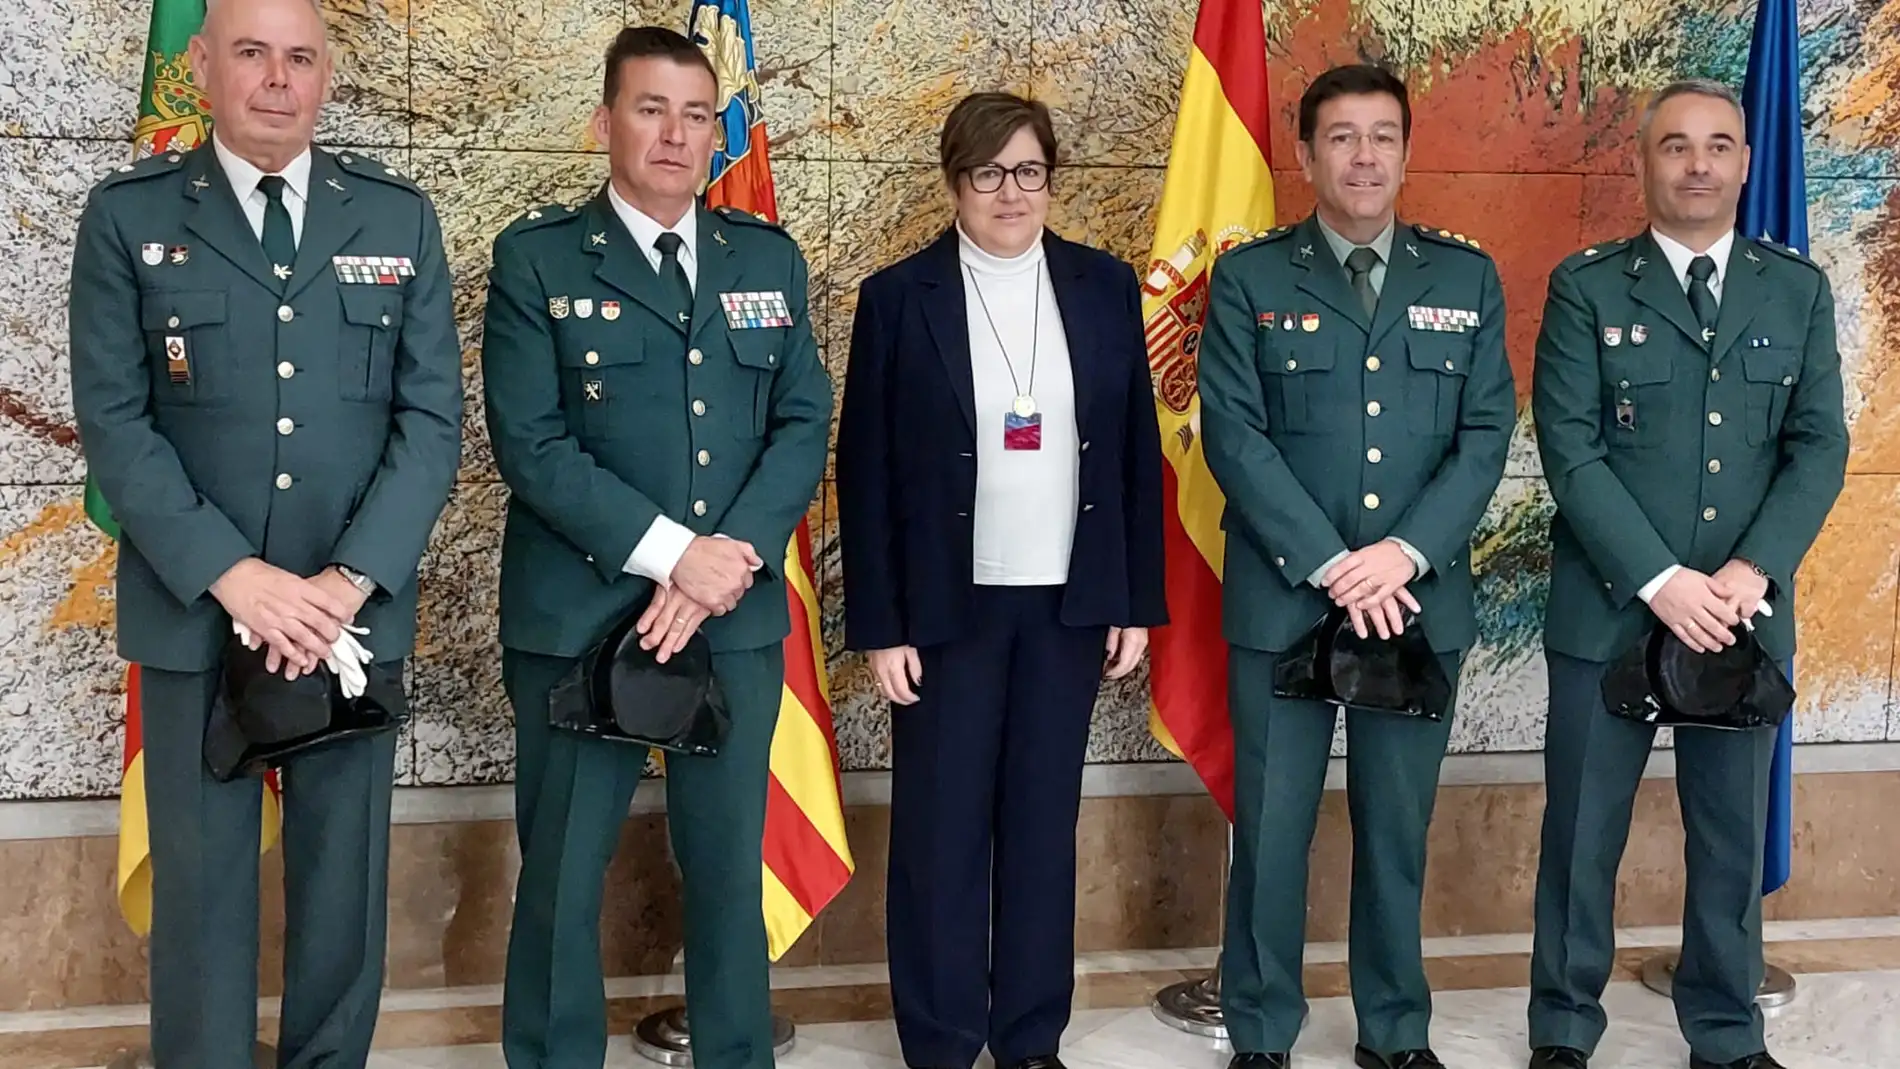 La subdelegada del Gobierno en Castellón, Antonia García Valls, ha recibido en la sede de la subdelegación a tres nuevos Comandantes de la Guardia Civil destinados a la provincia de Castellón.